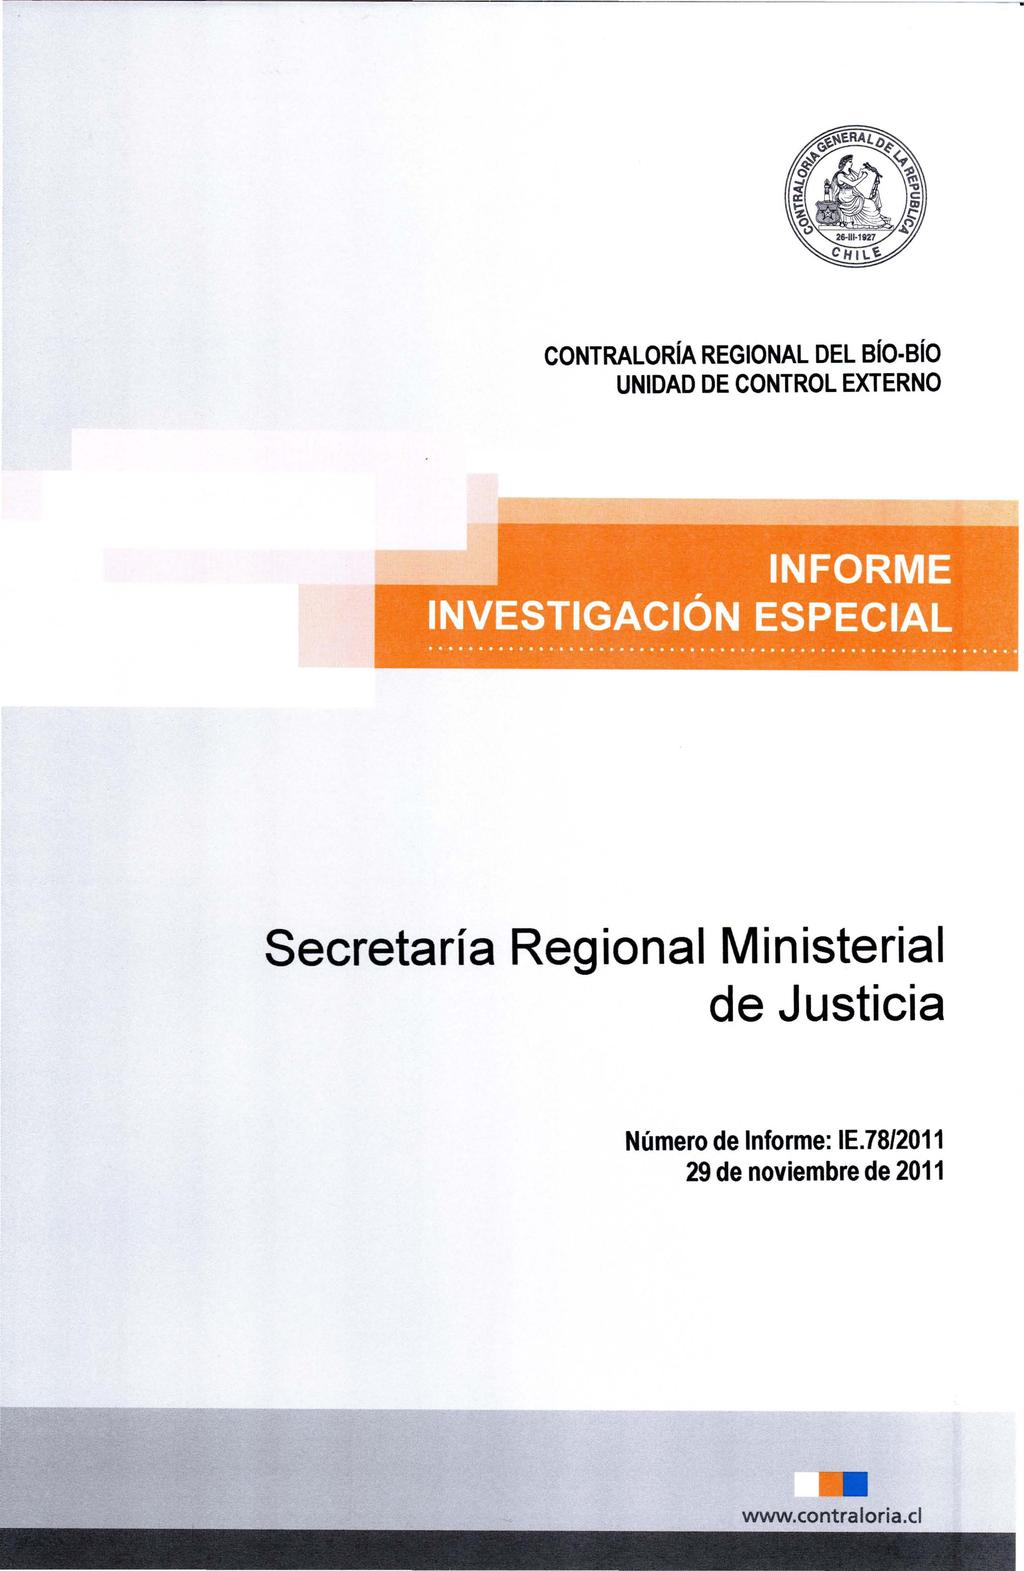 CONTRALORíA REGIONAL DEL BíO-Bío Secretaría Regional Ministerial